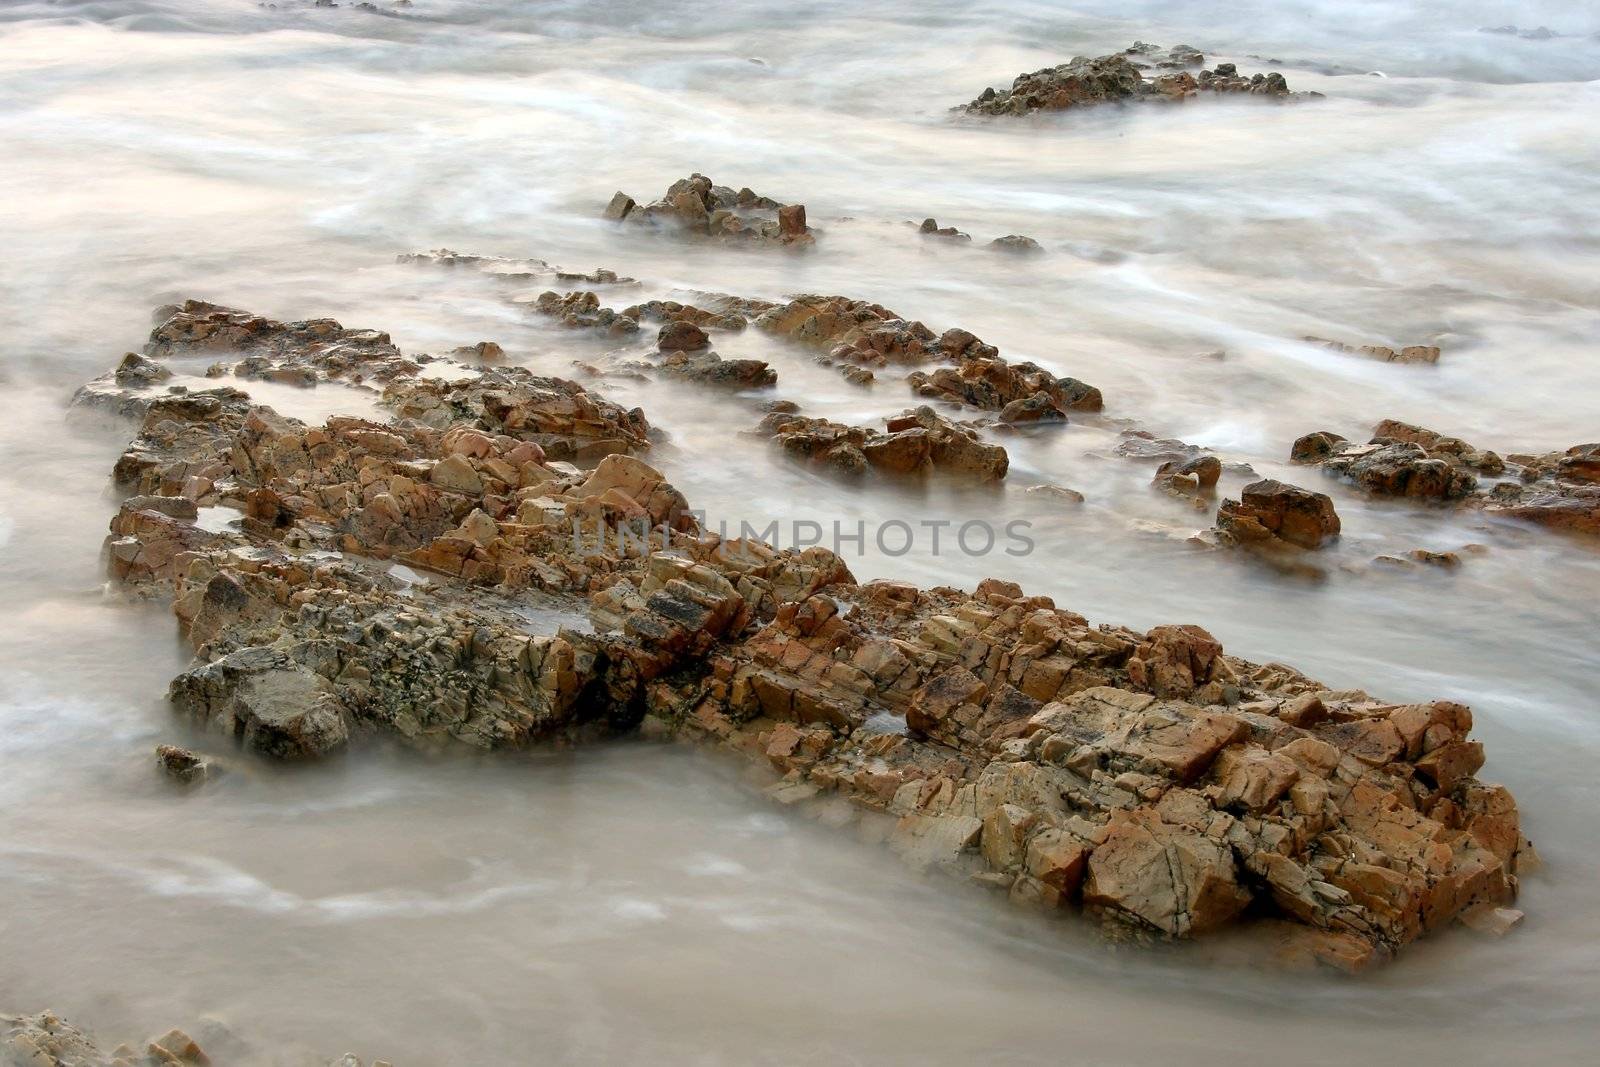 Ocean Tide and Rocks by fouroaks